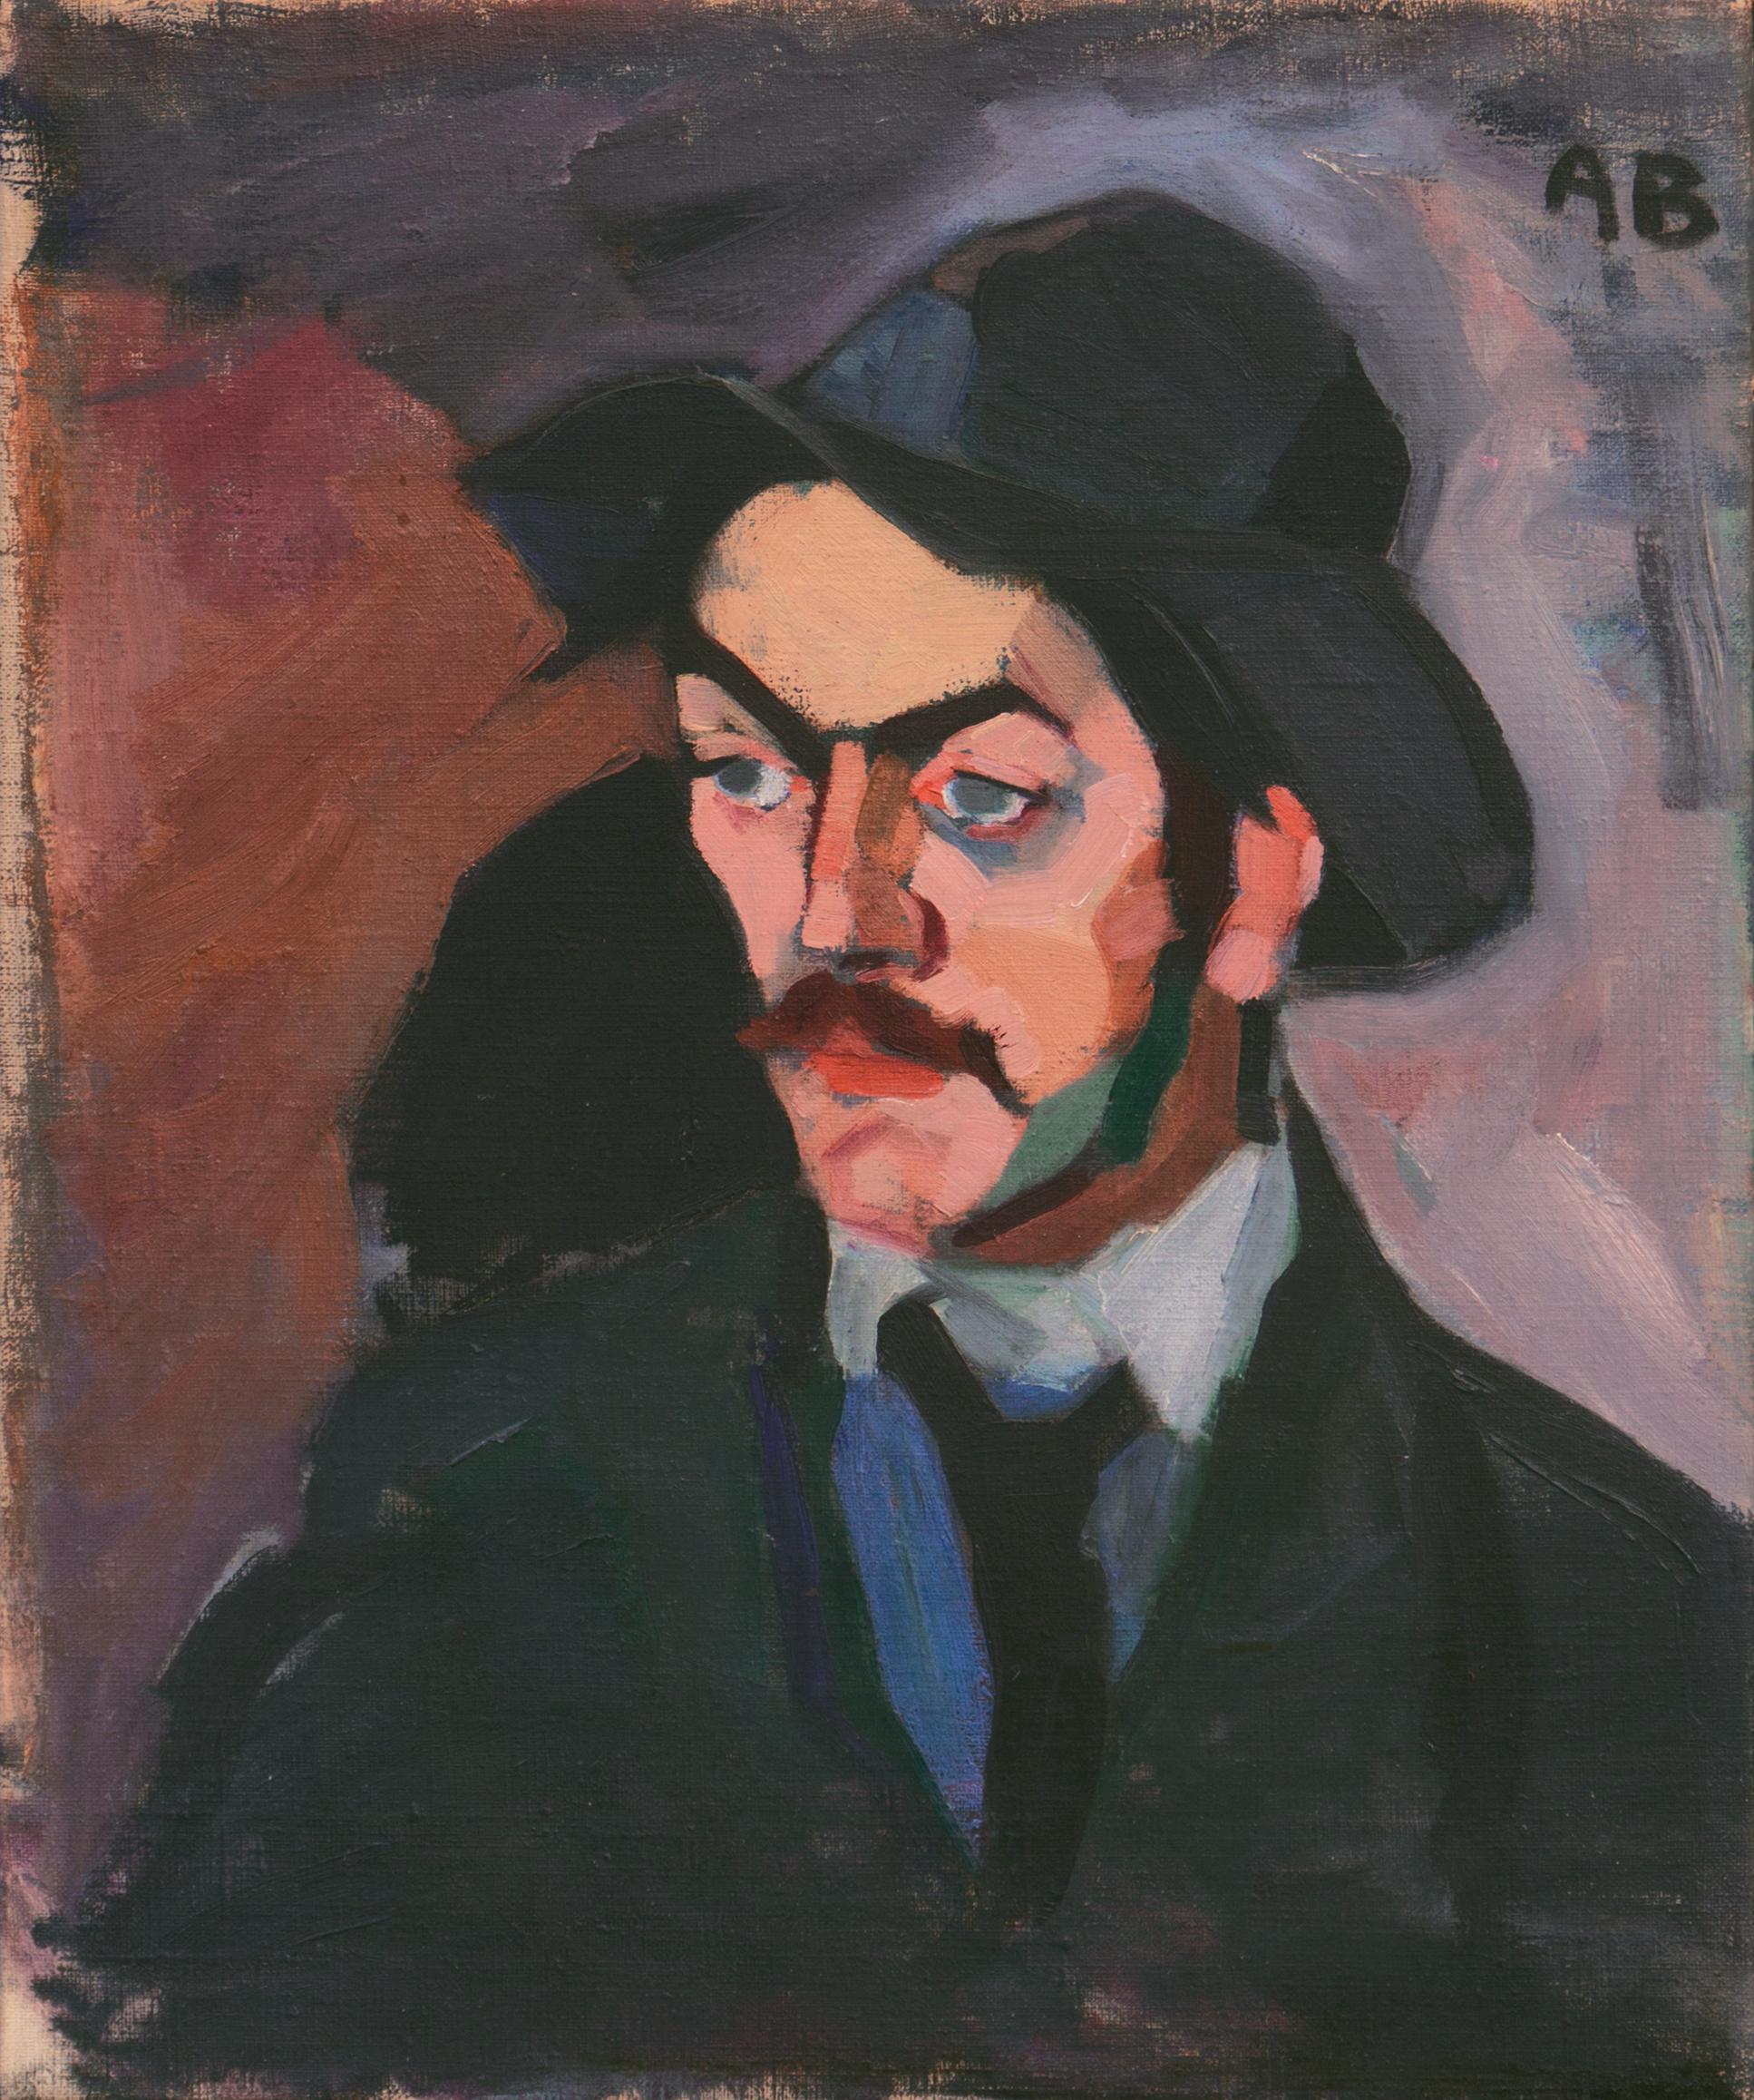 Axel Bentzen Portrait Painting - 'Study of a Man', Paris, Flâneur, Boulevardier, Danish Post-Impressionist Oil